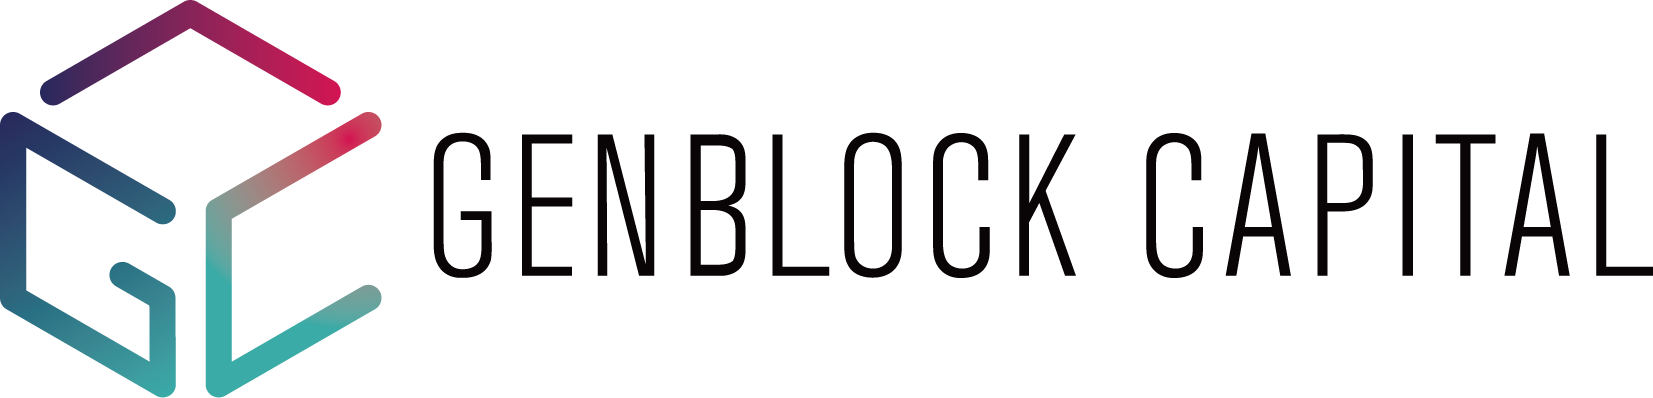 genblock capital logo